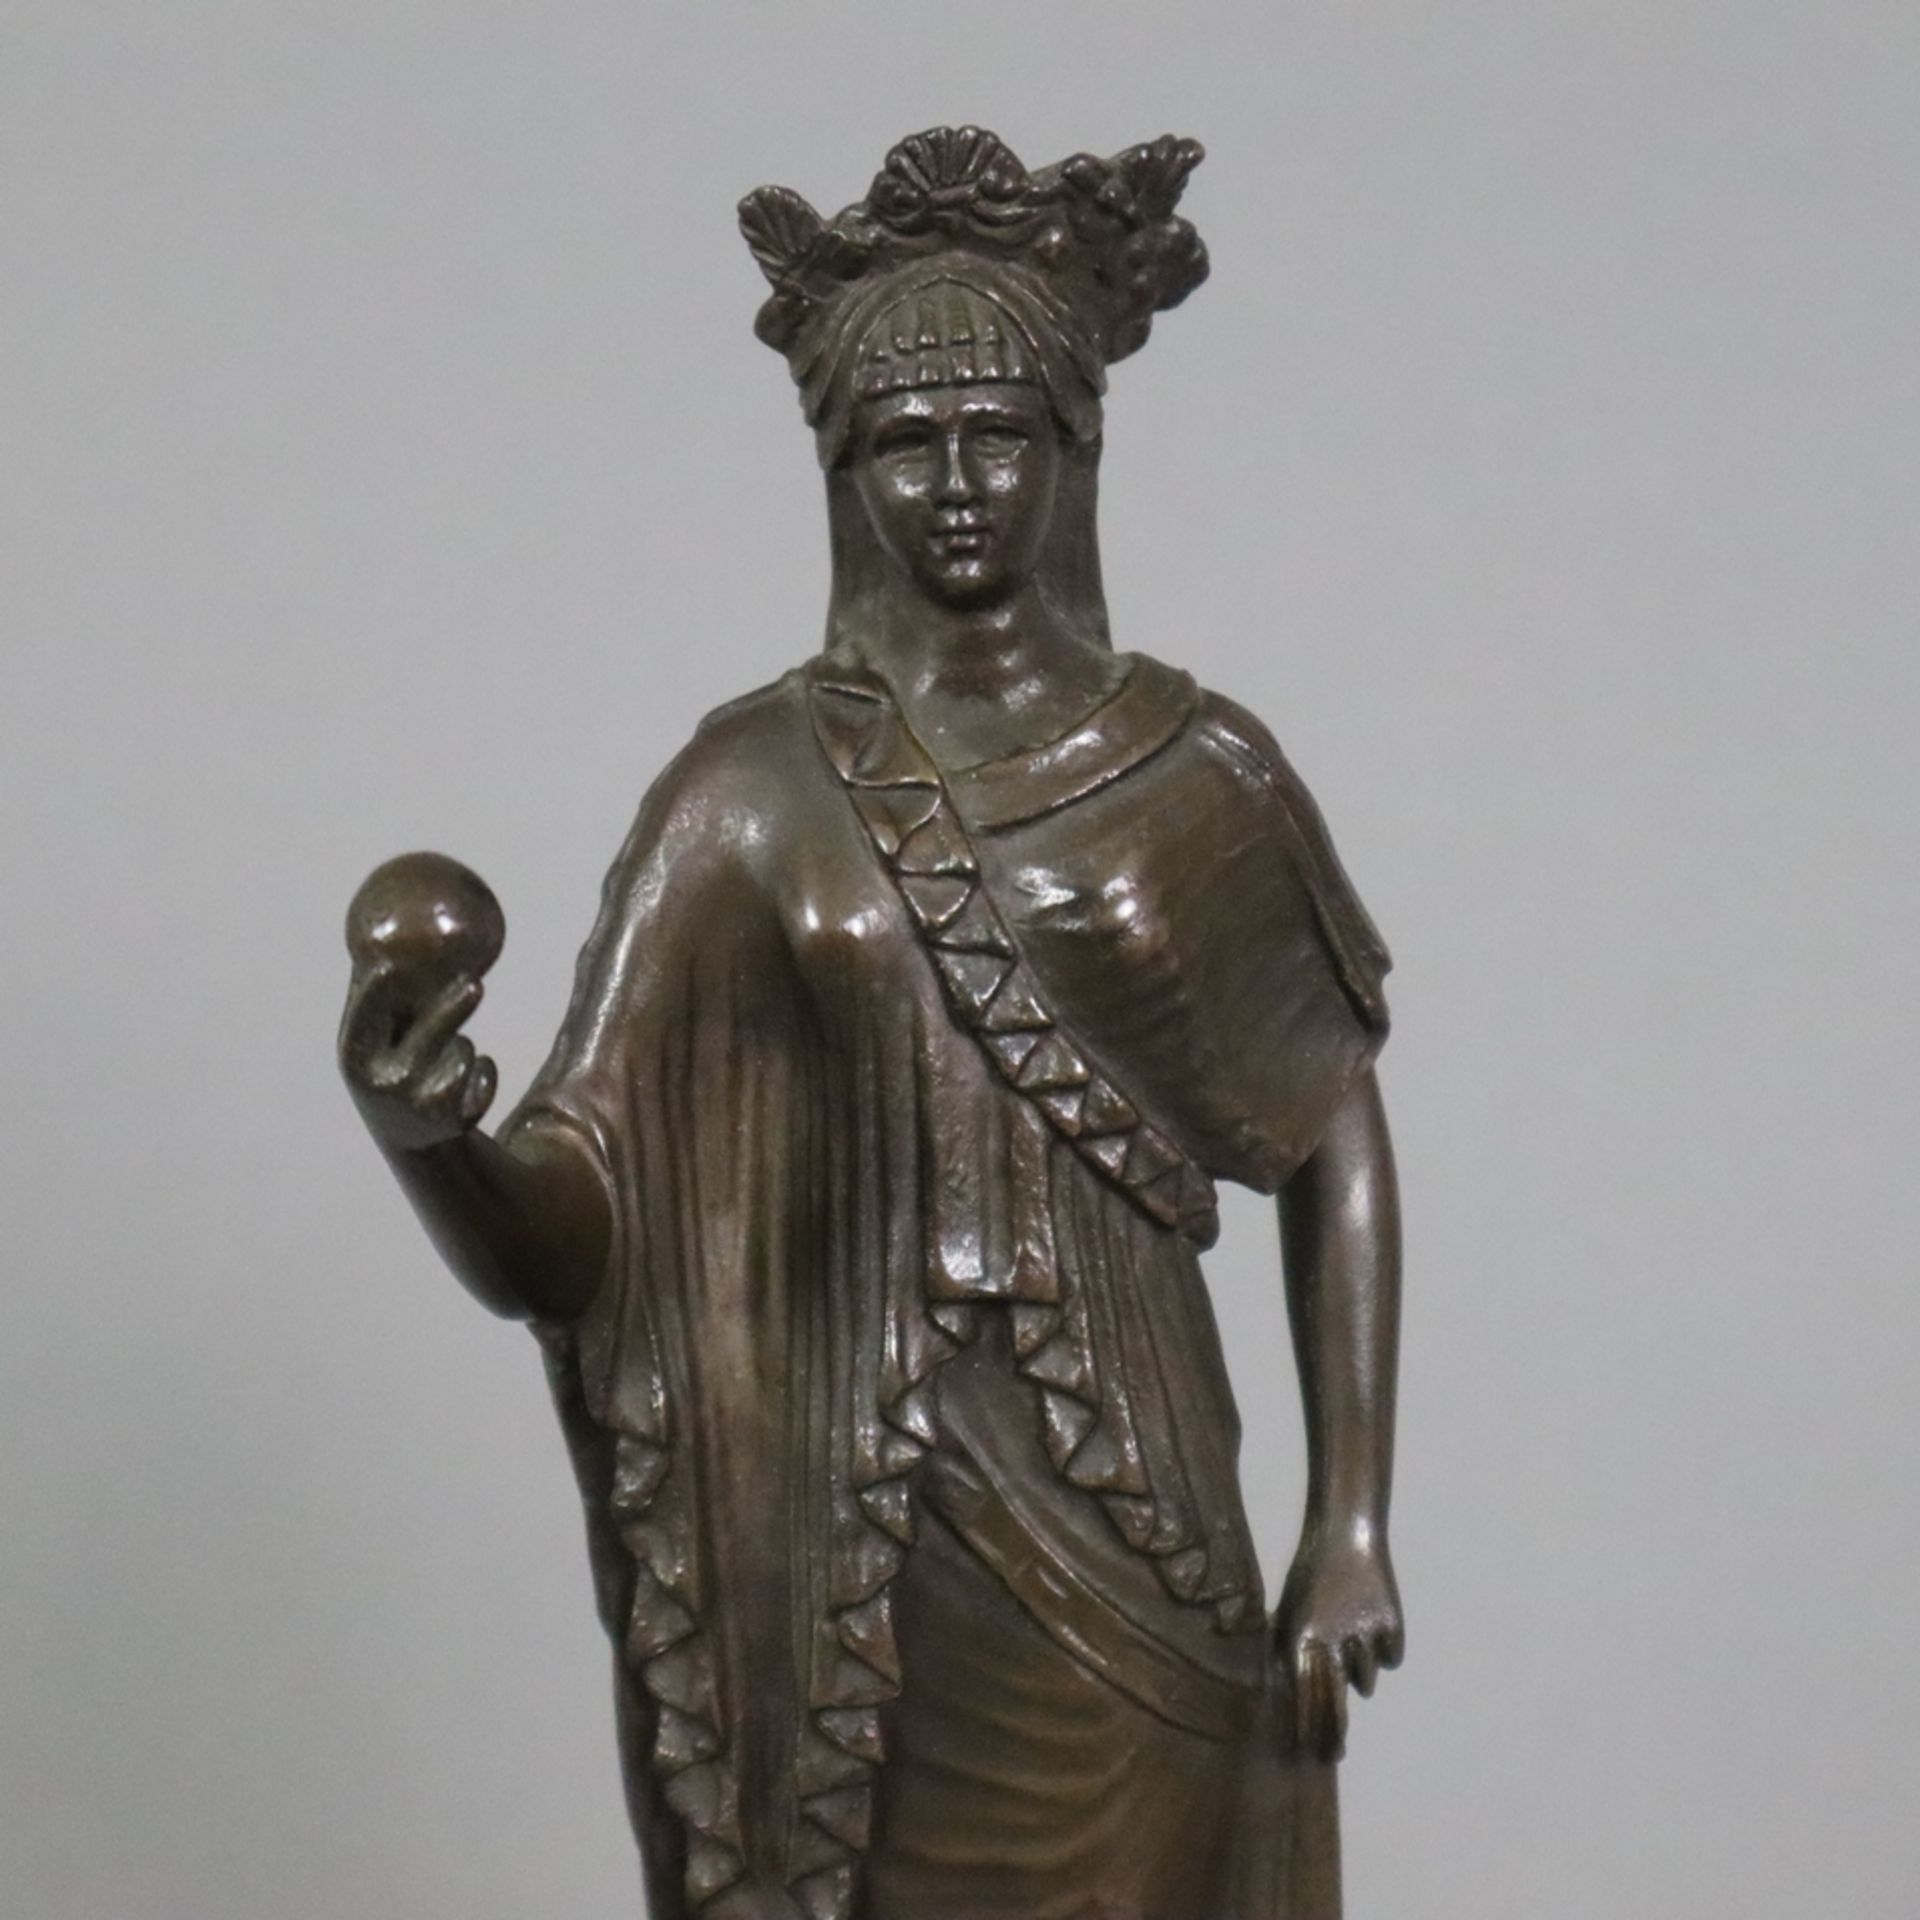 Figurine einer antiken Priesterin - Bronze, braun patiniert, antikisierende Frauenfigur mit Diadem, - Bild 2 aus 8